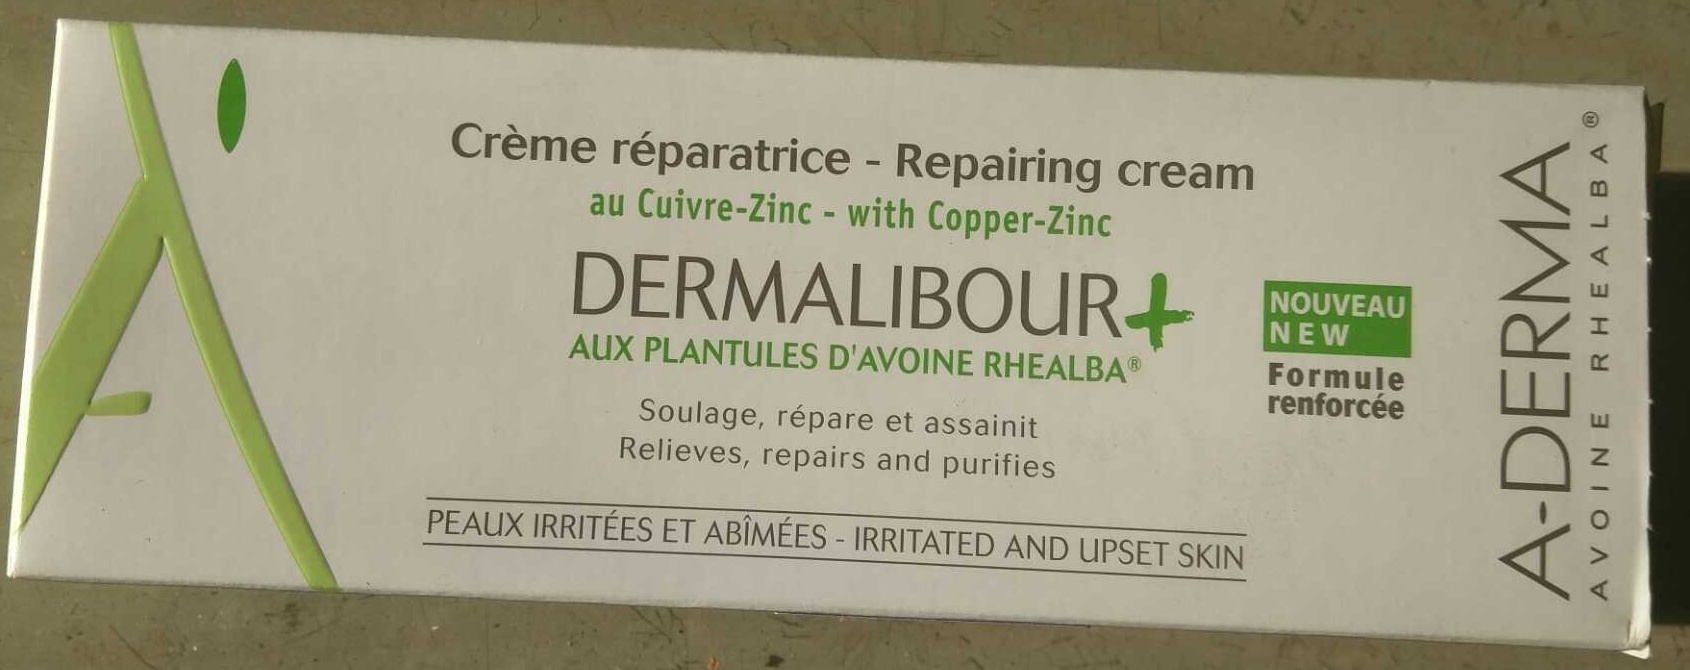 Crème réparatrice Dermalibour+ - Produkt - fr